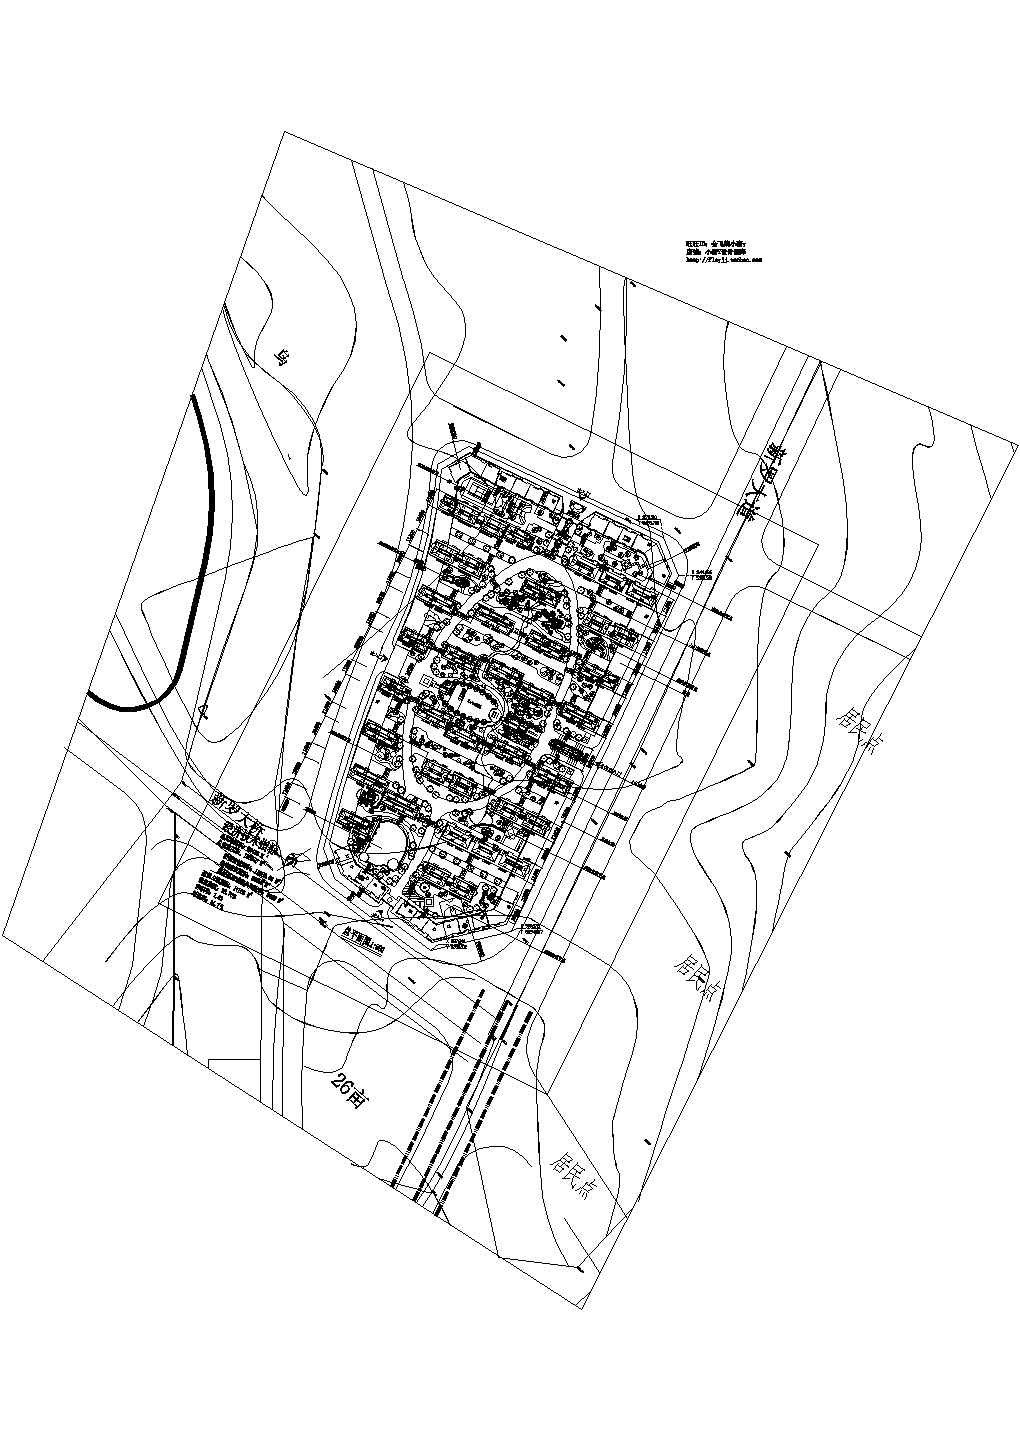 某长方形地块总用地56439㎡住宅小区规划设计cad方案总平面图（含经济技术指标）